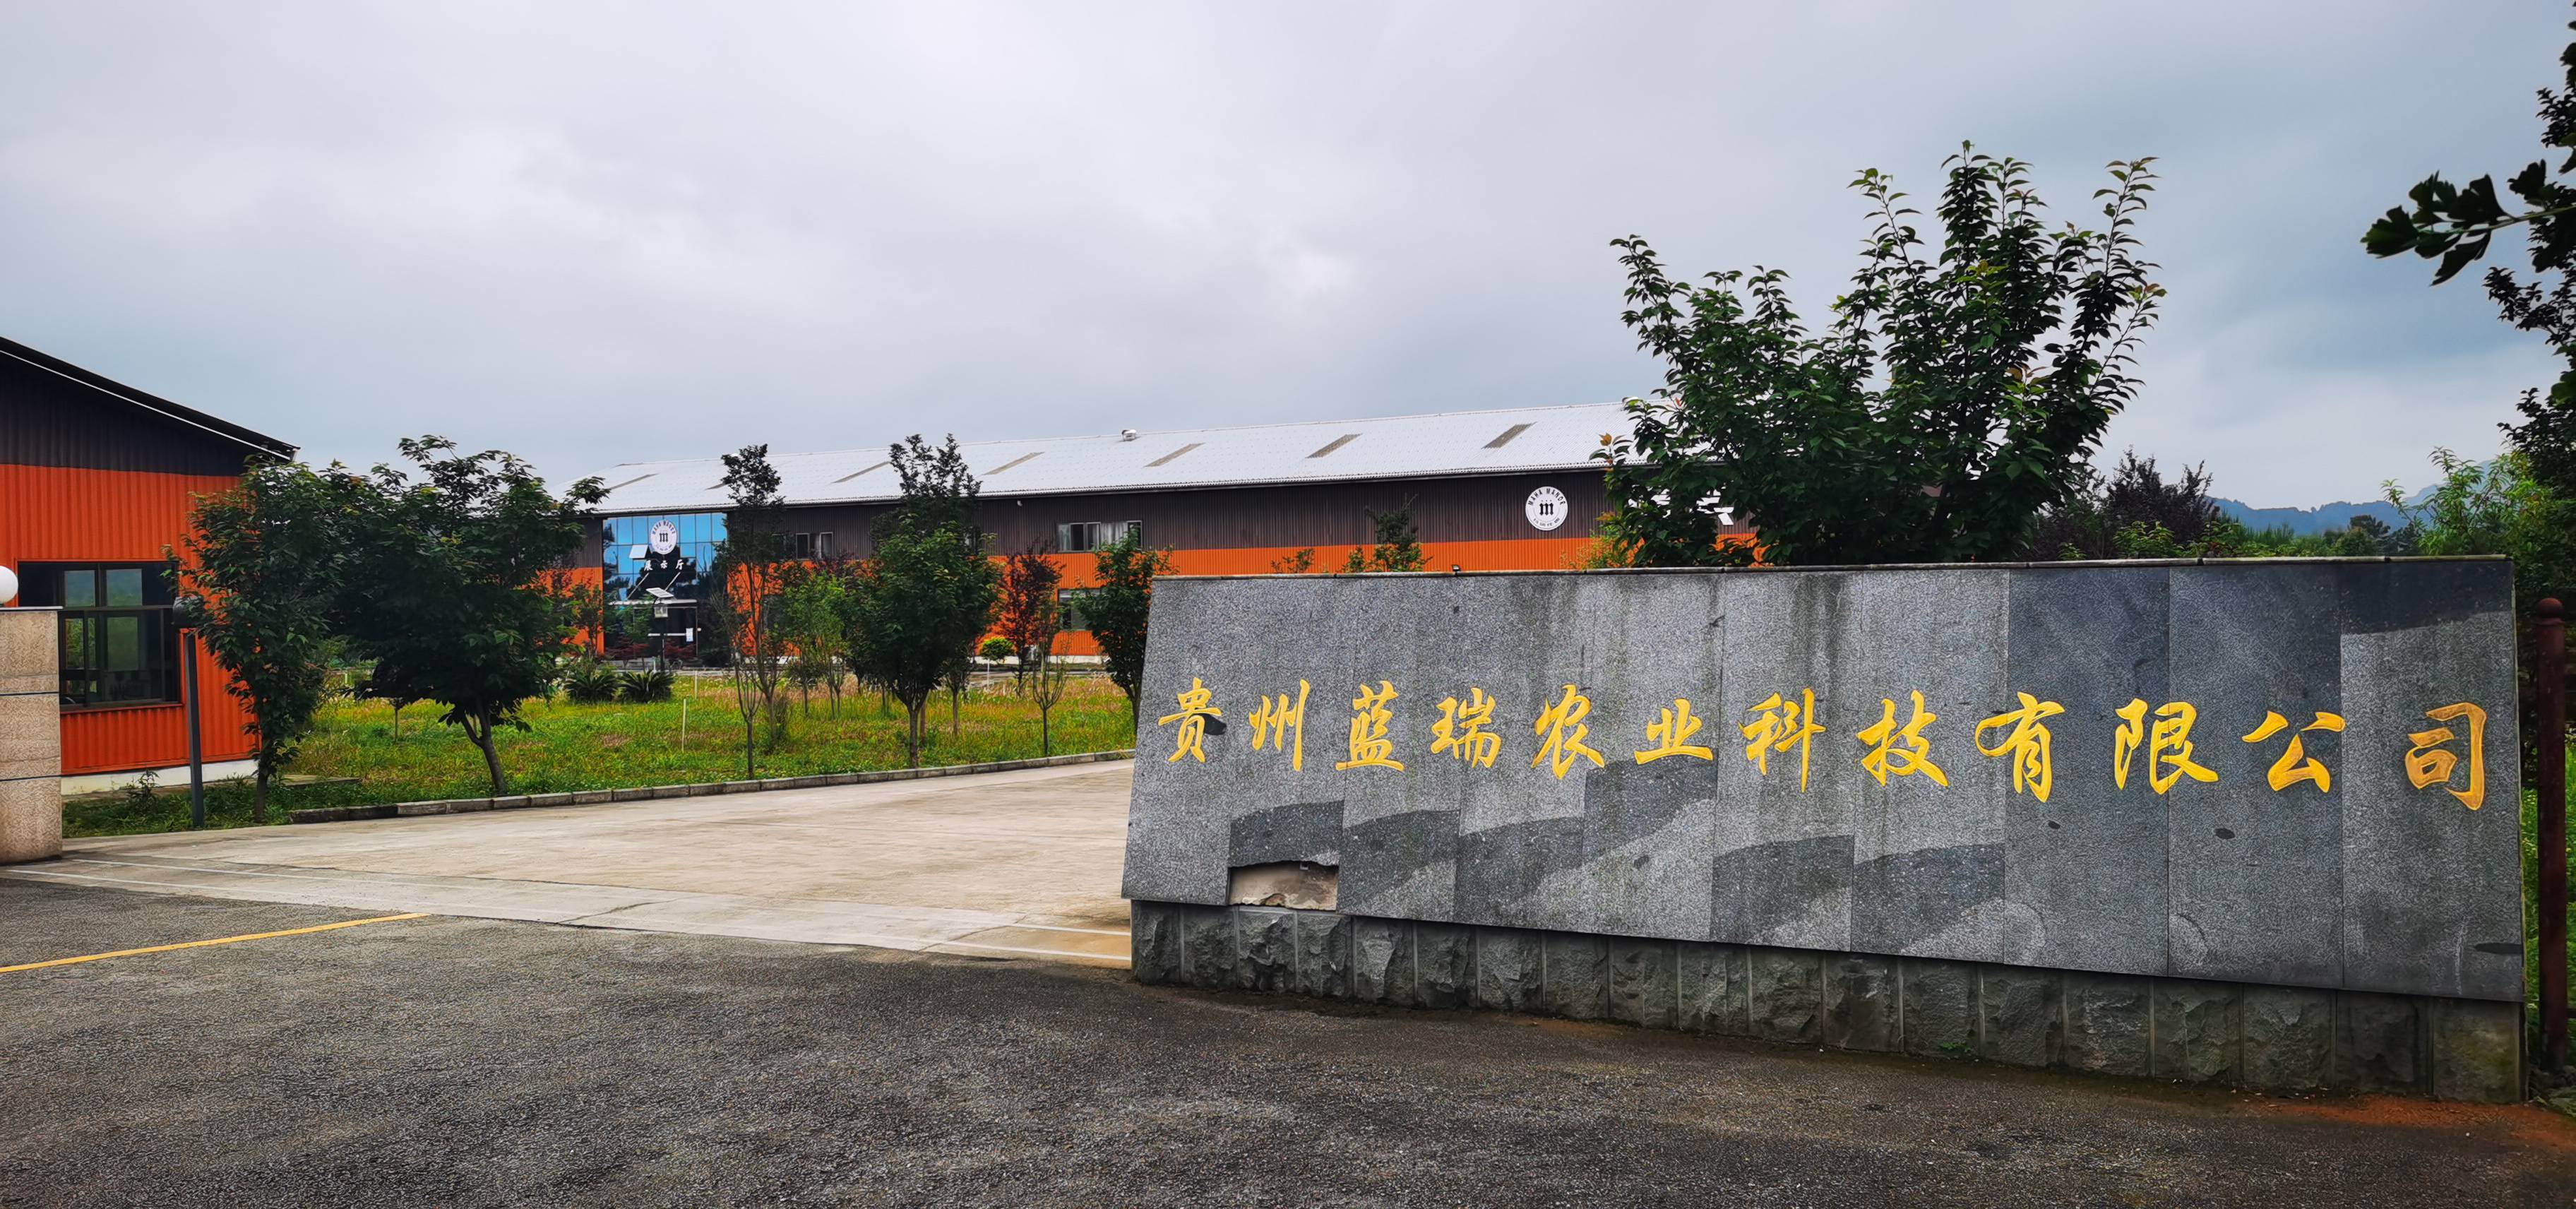 贵州蓝瑞农业科技有限公司寻找OEM代工客